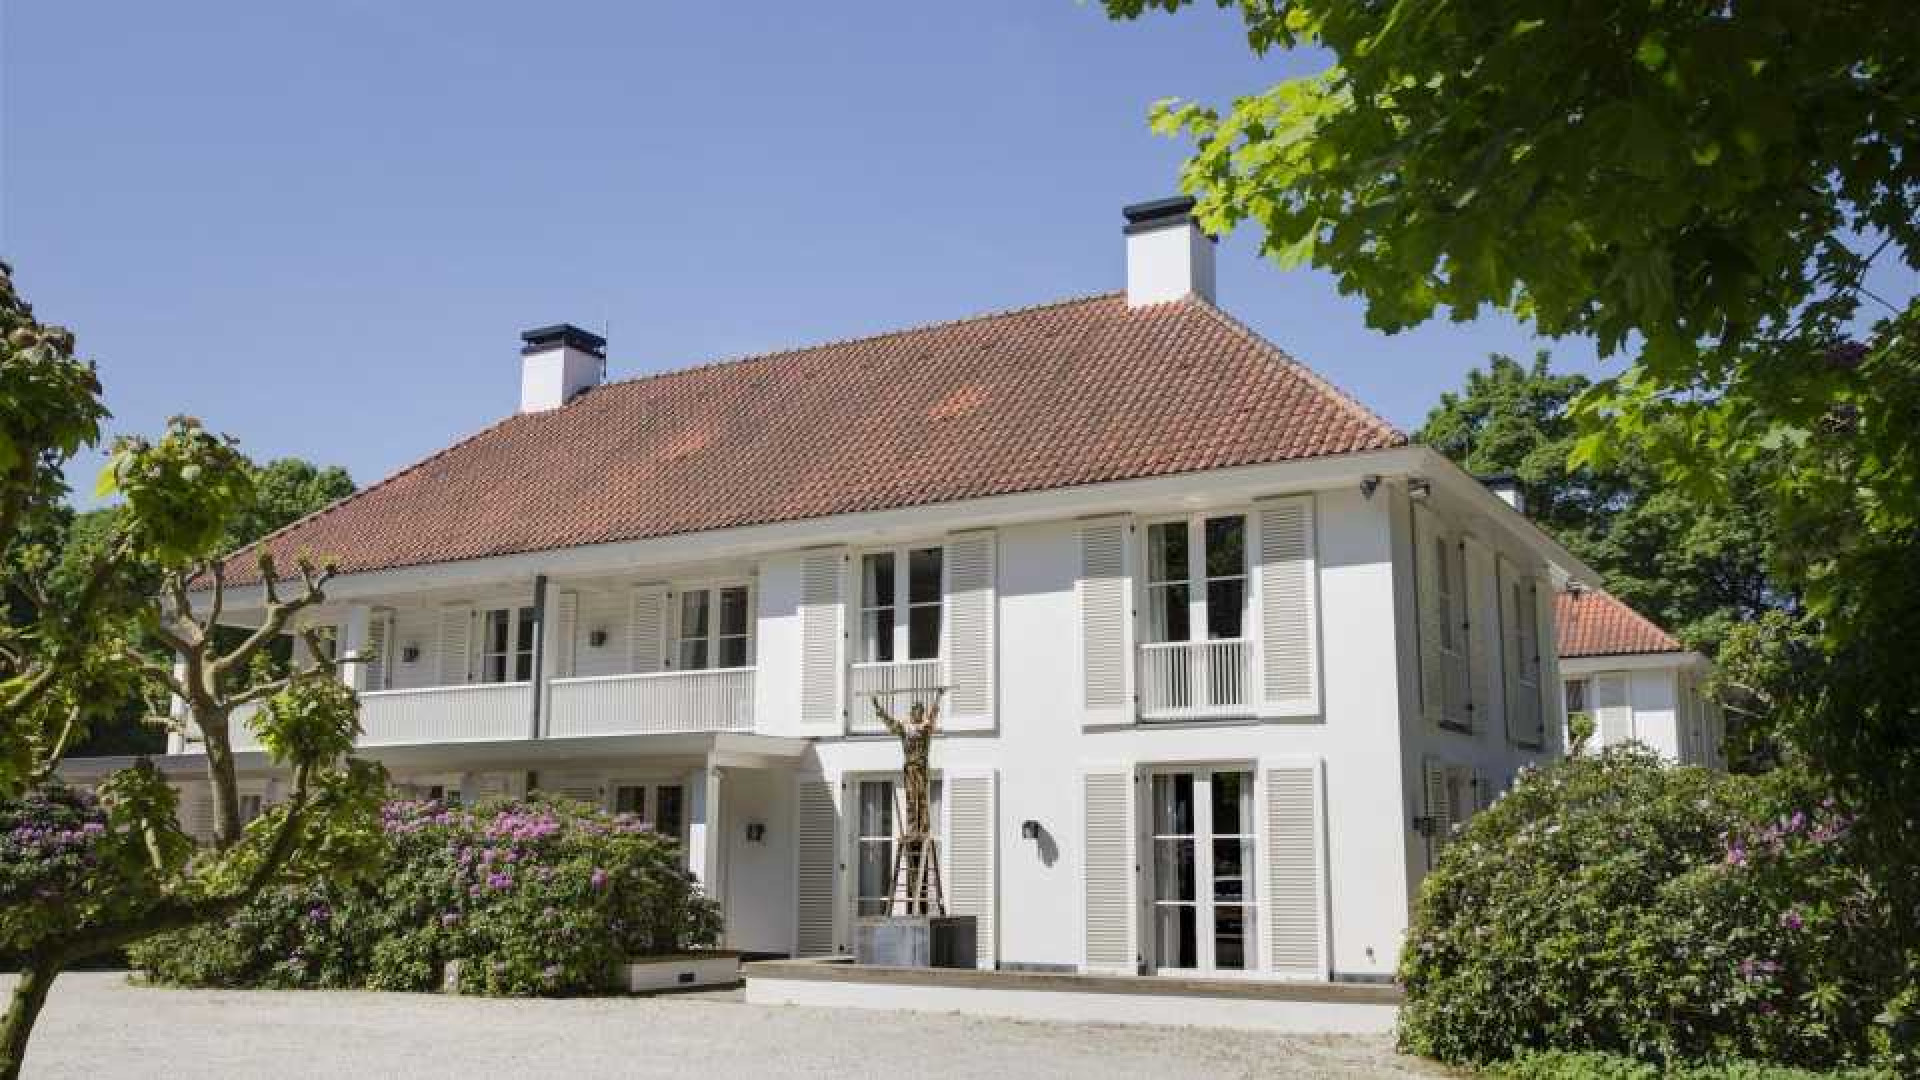 Oud minister en platenbaas Herman Heinsbroek haalt zijn miljoenen kostende landhuis uit de verkoop. Zie foto's